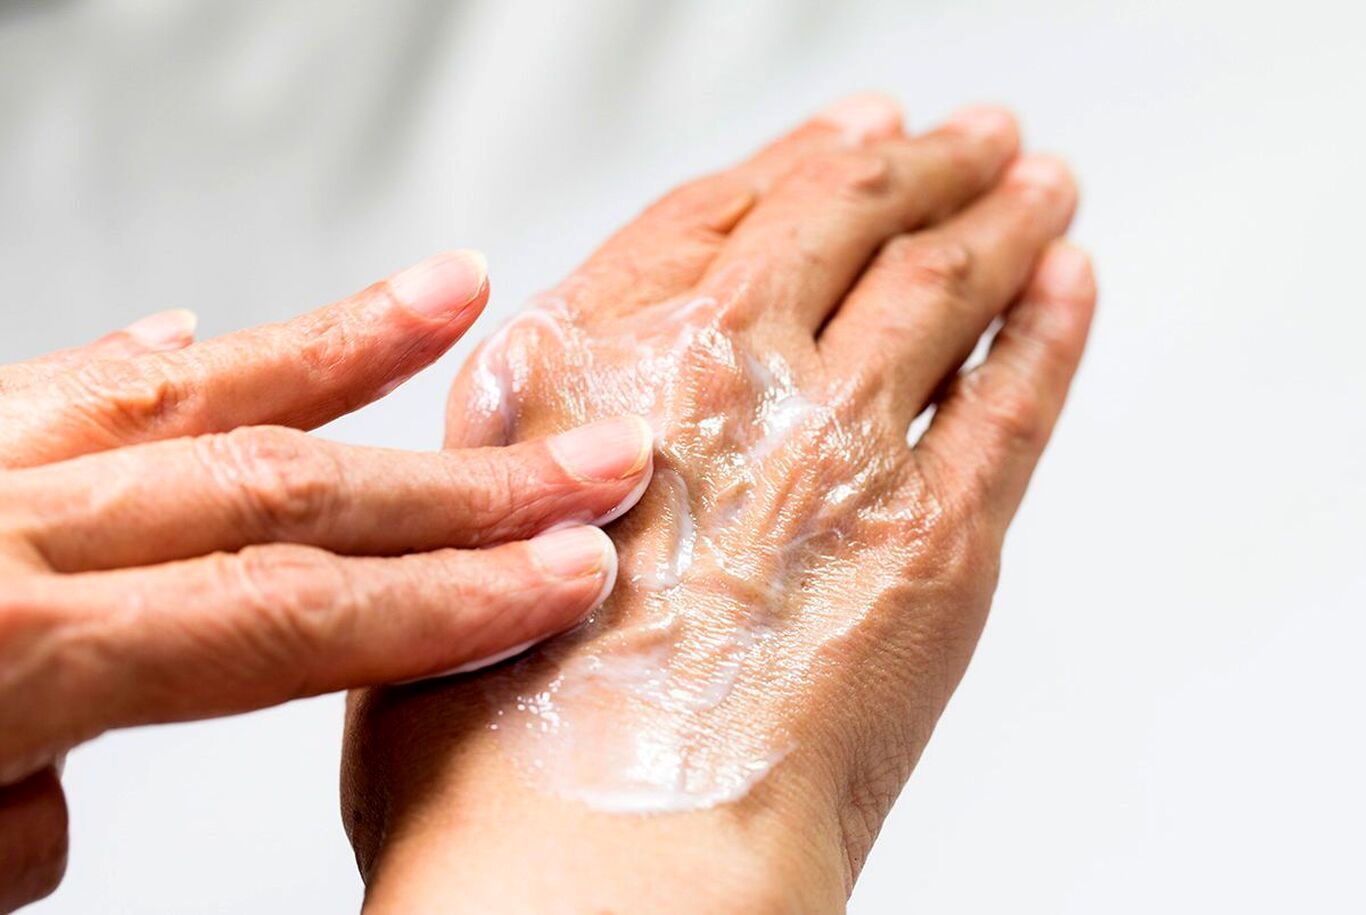 ۳ درمان خانگی و موثر برای رفع خشکی دست